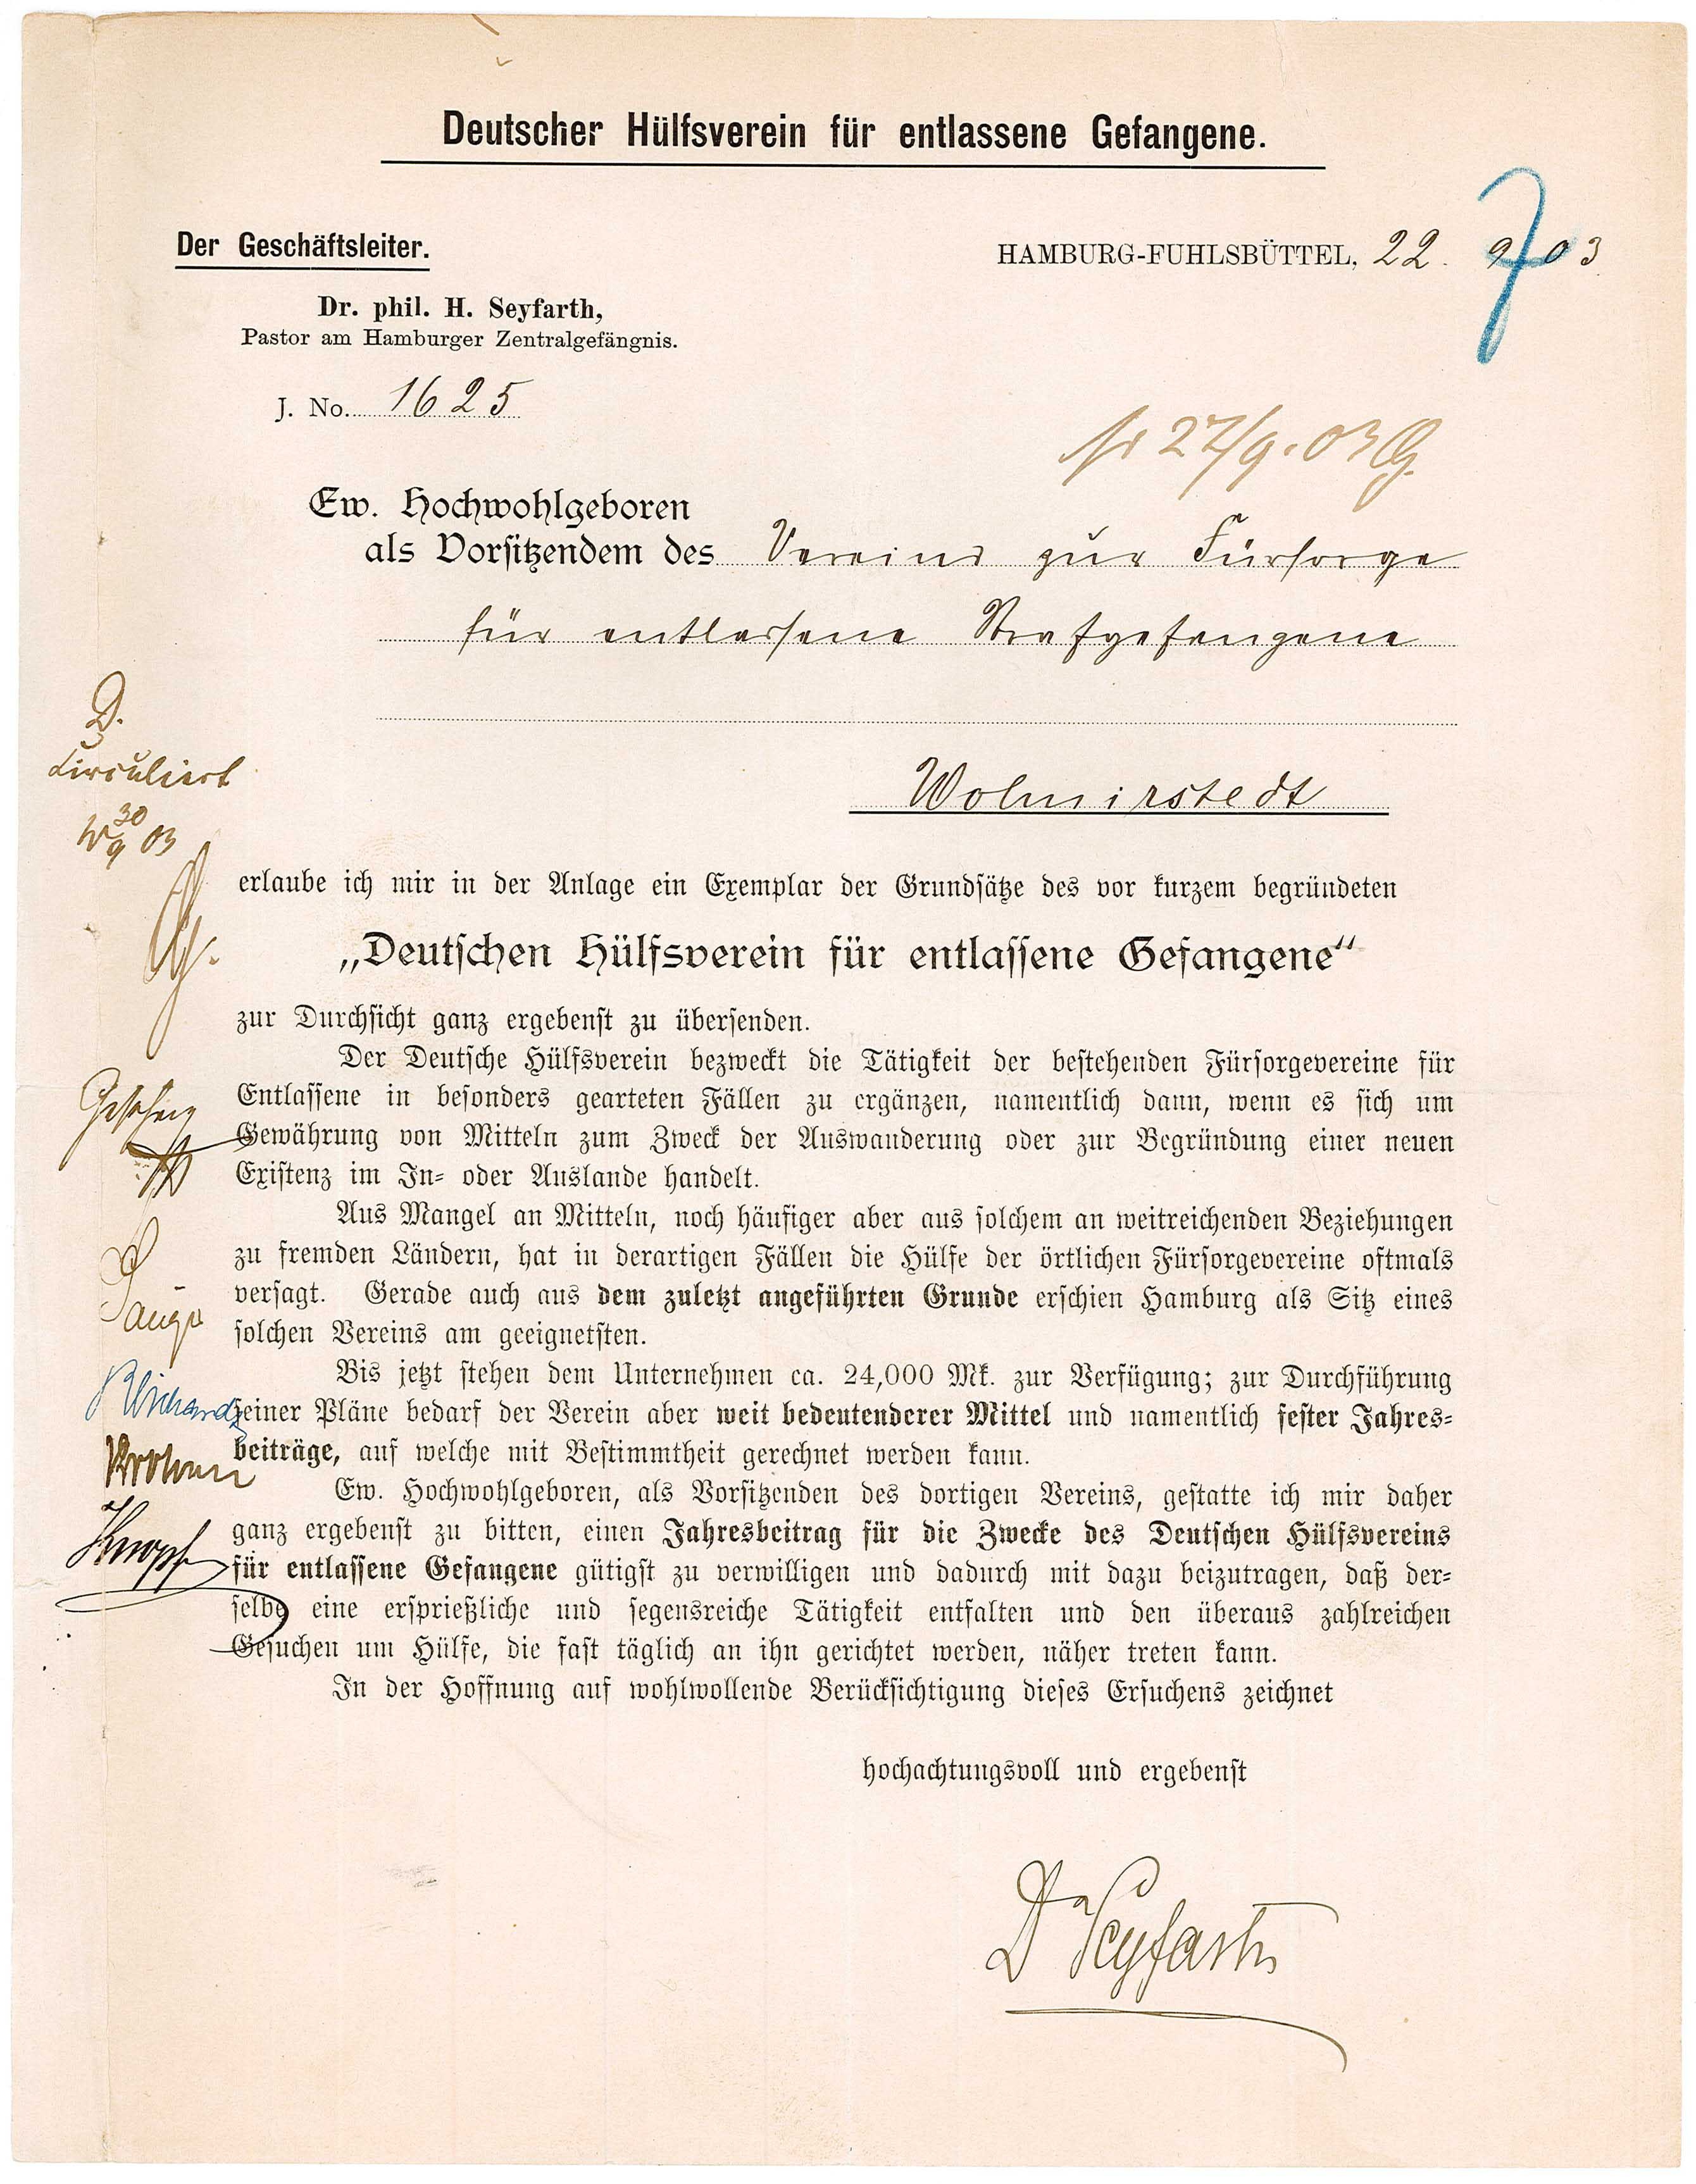 Anschreiben des Deutschen Hülfsvereins für entlassene Gefangene (Museum Wolmirstedt RR-F)